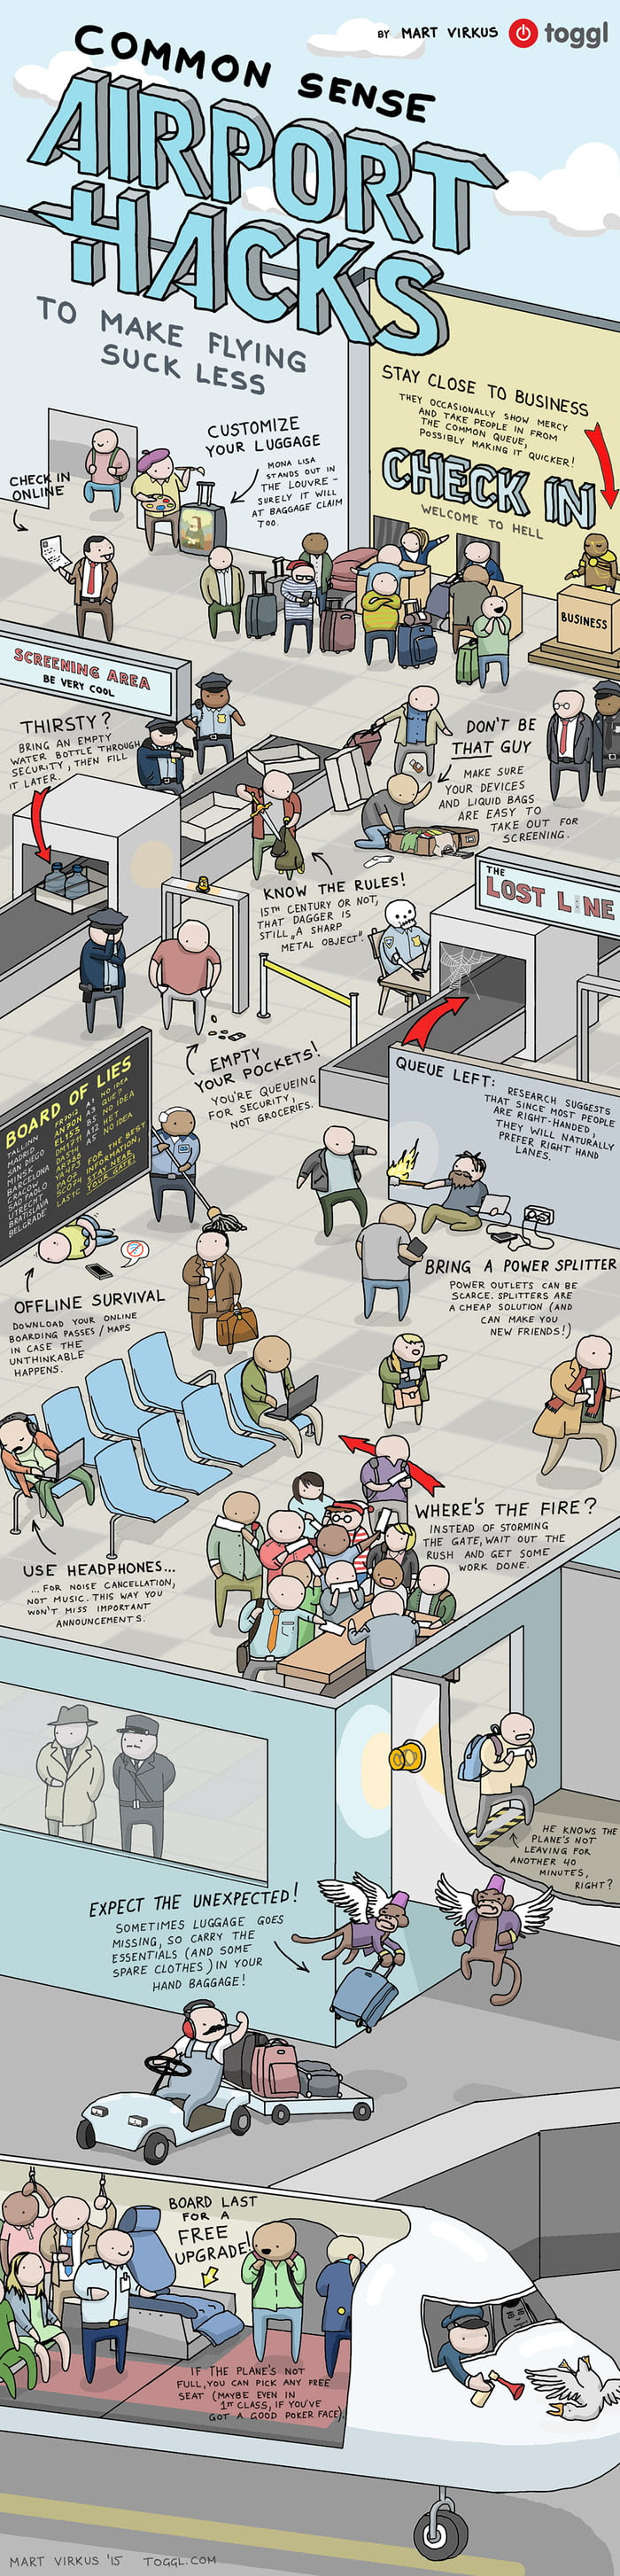 Airport Hacks